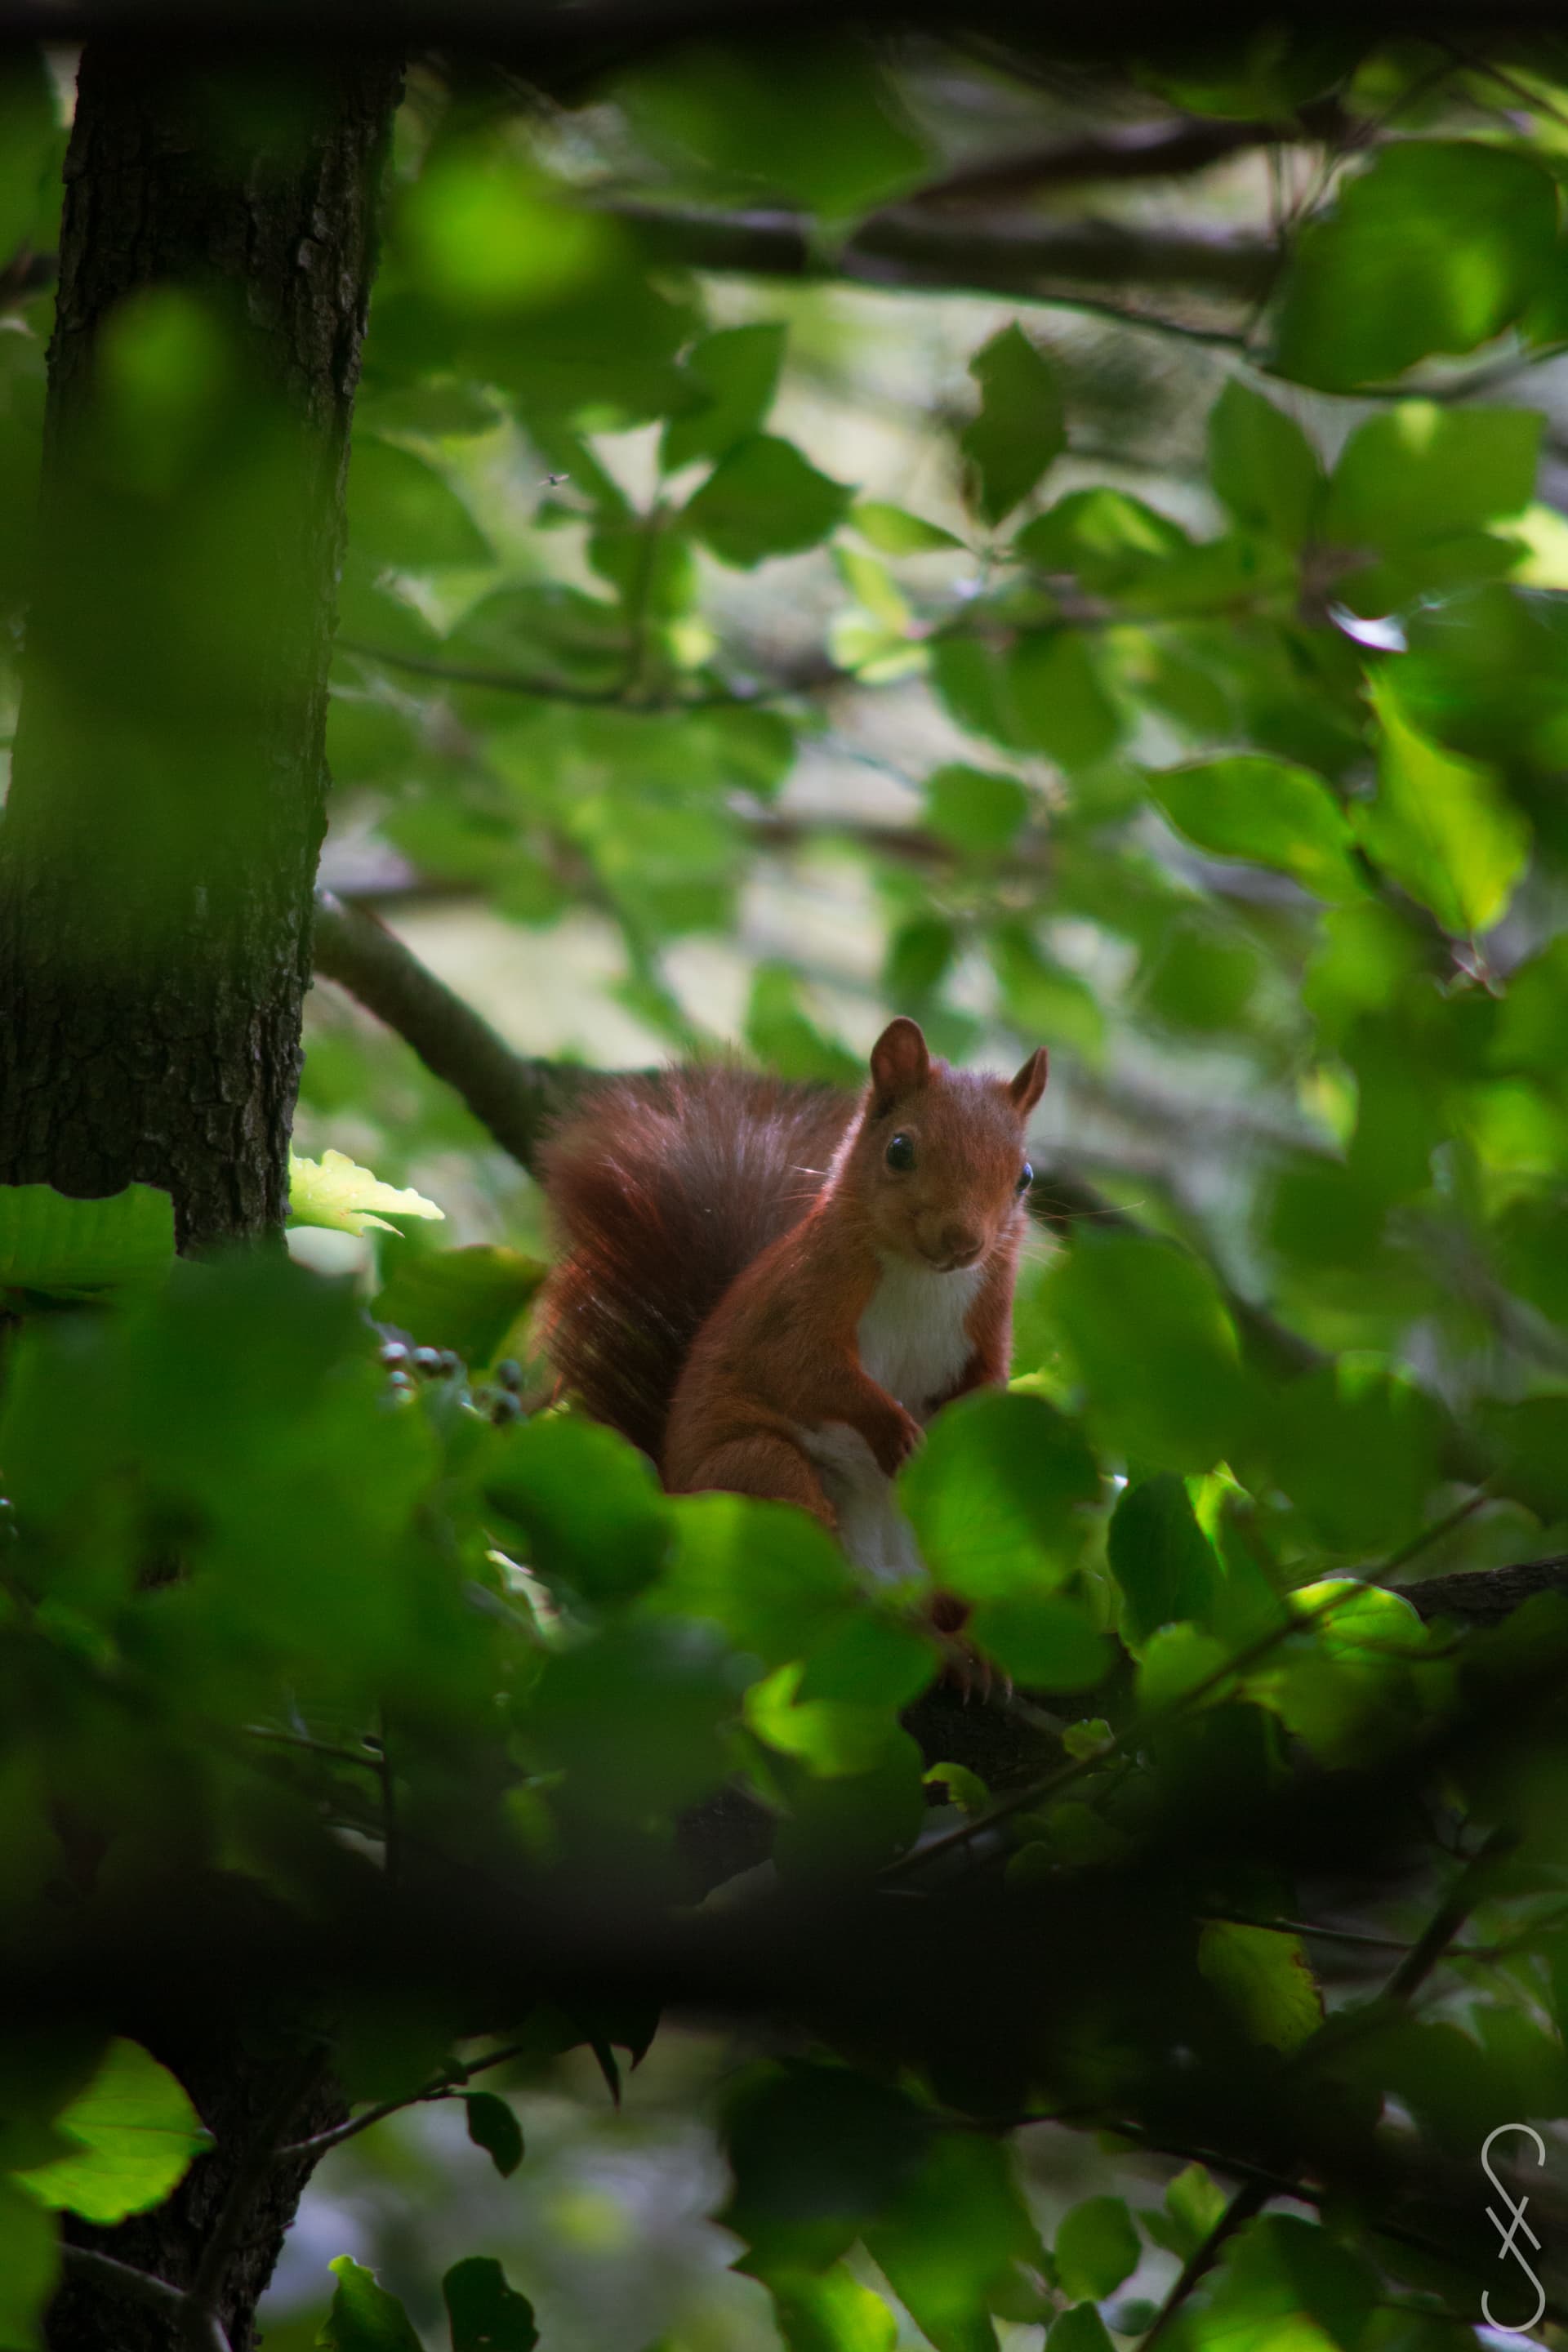 Un écureuil assis sur une branche entouré de feuille verte.